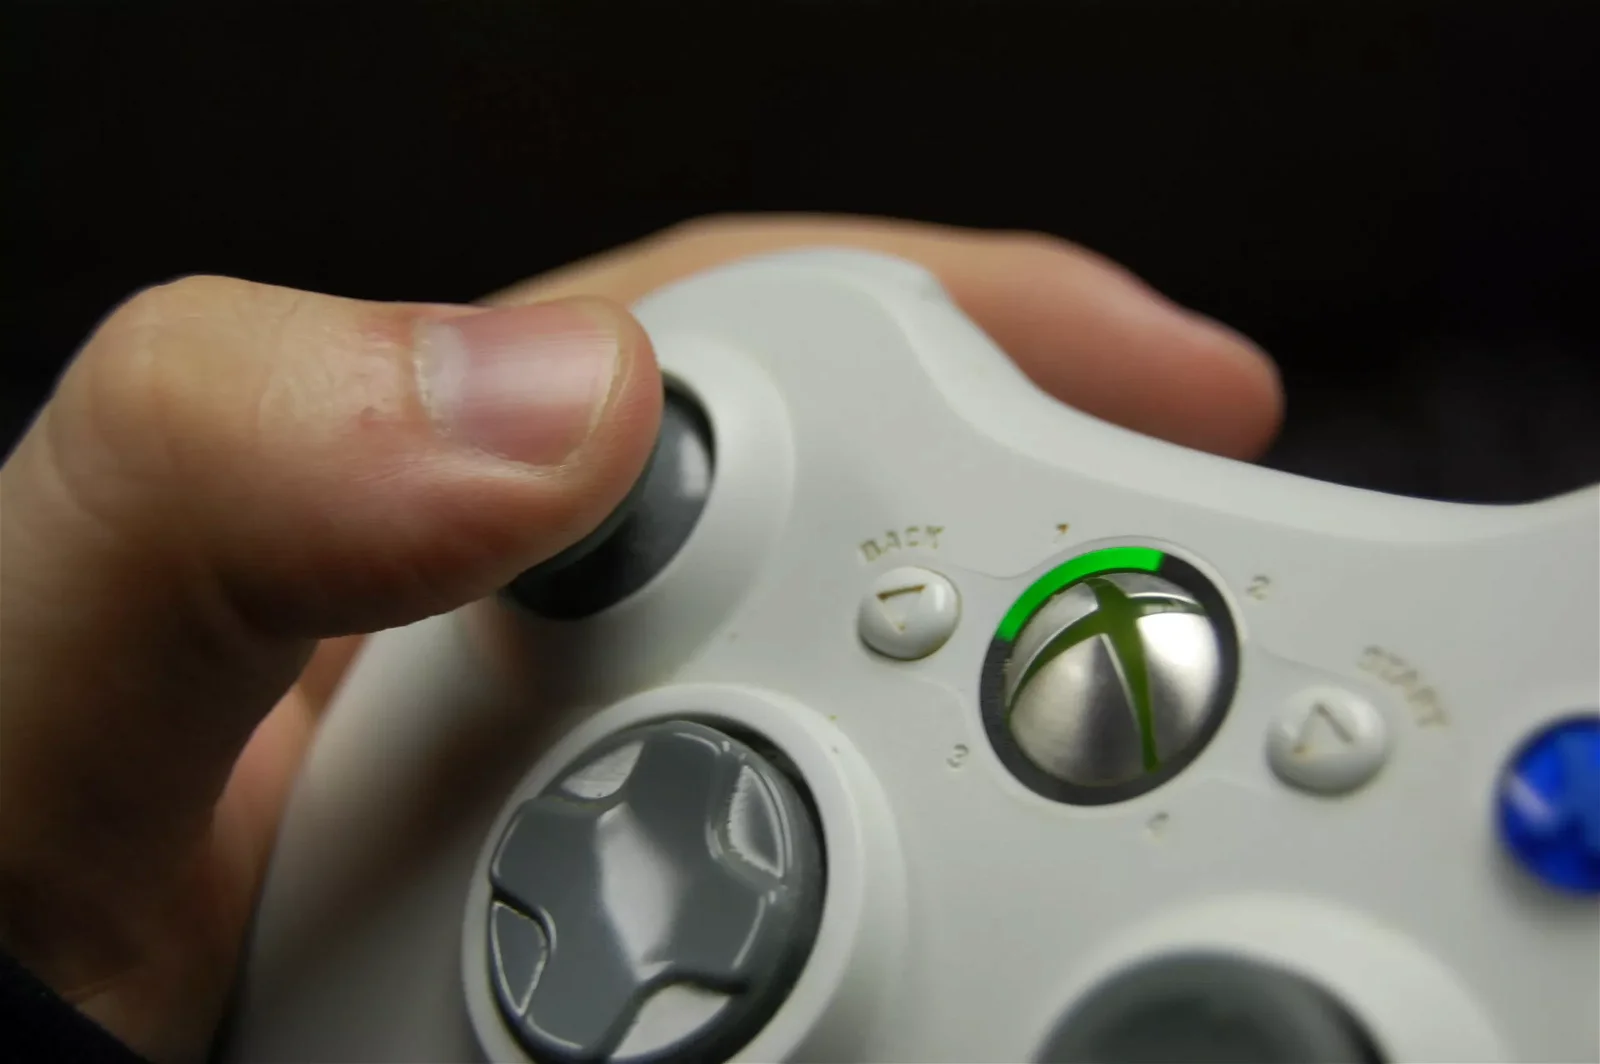 Immagine di Xbox 360 usata per chat segrete e illegali